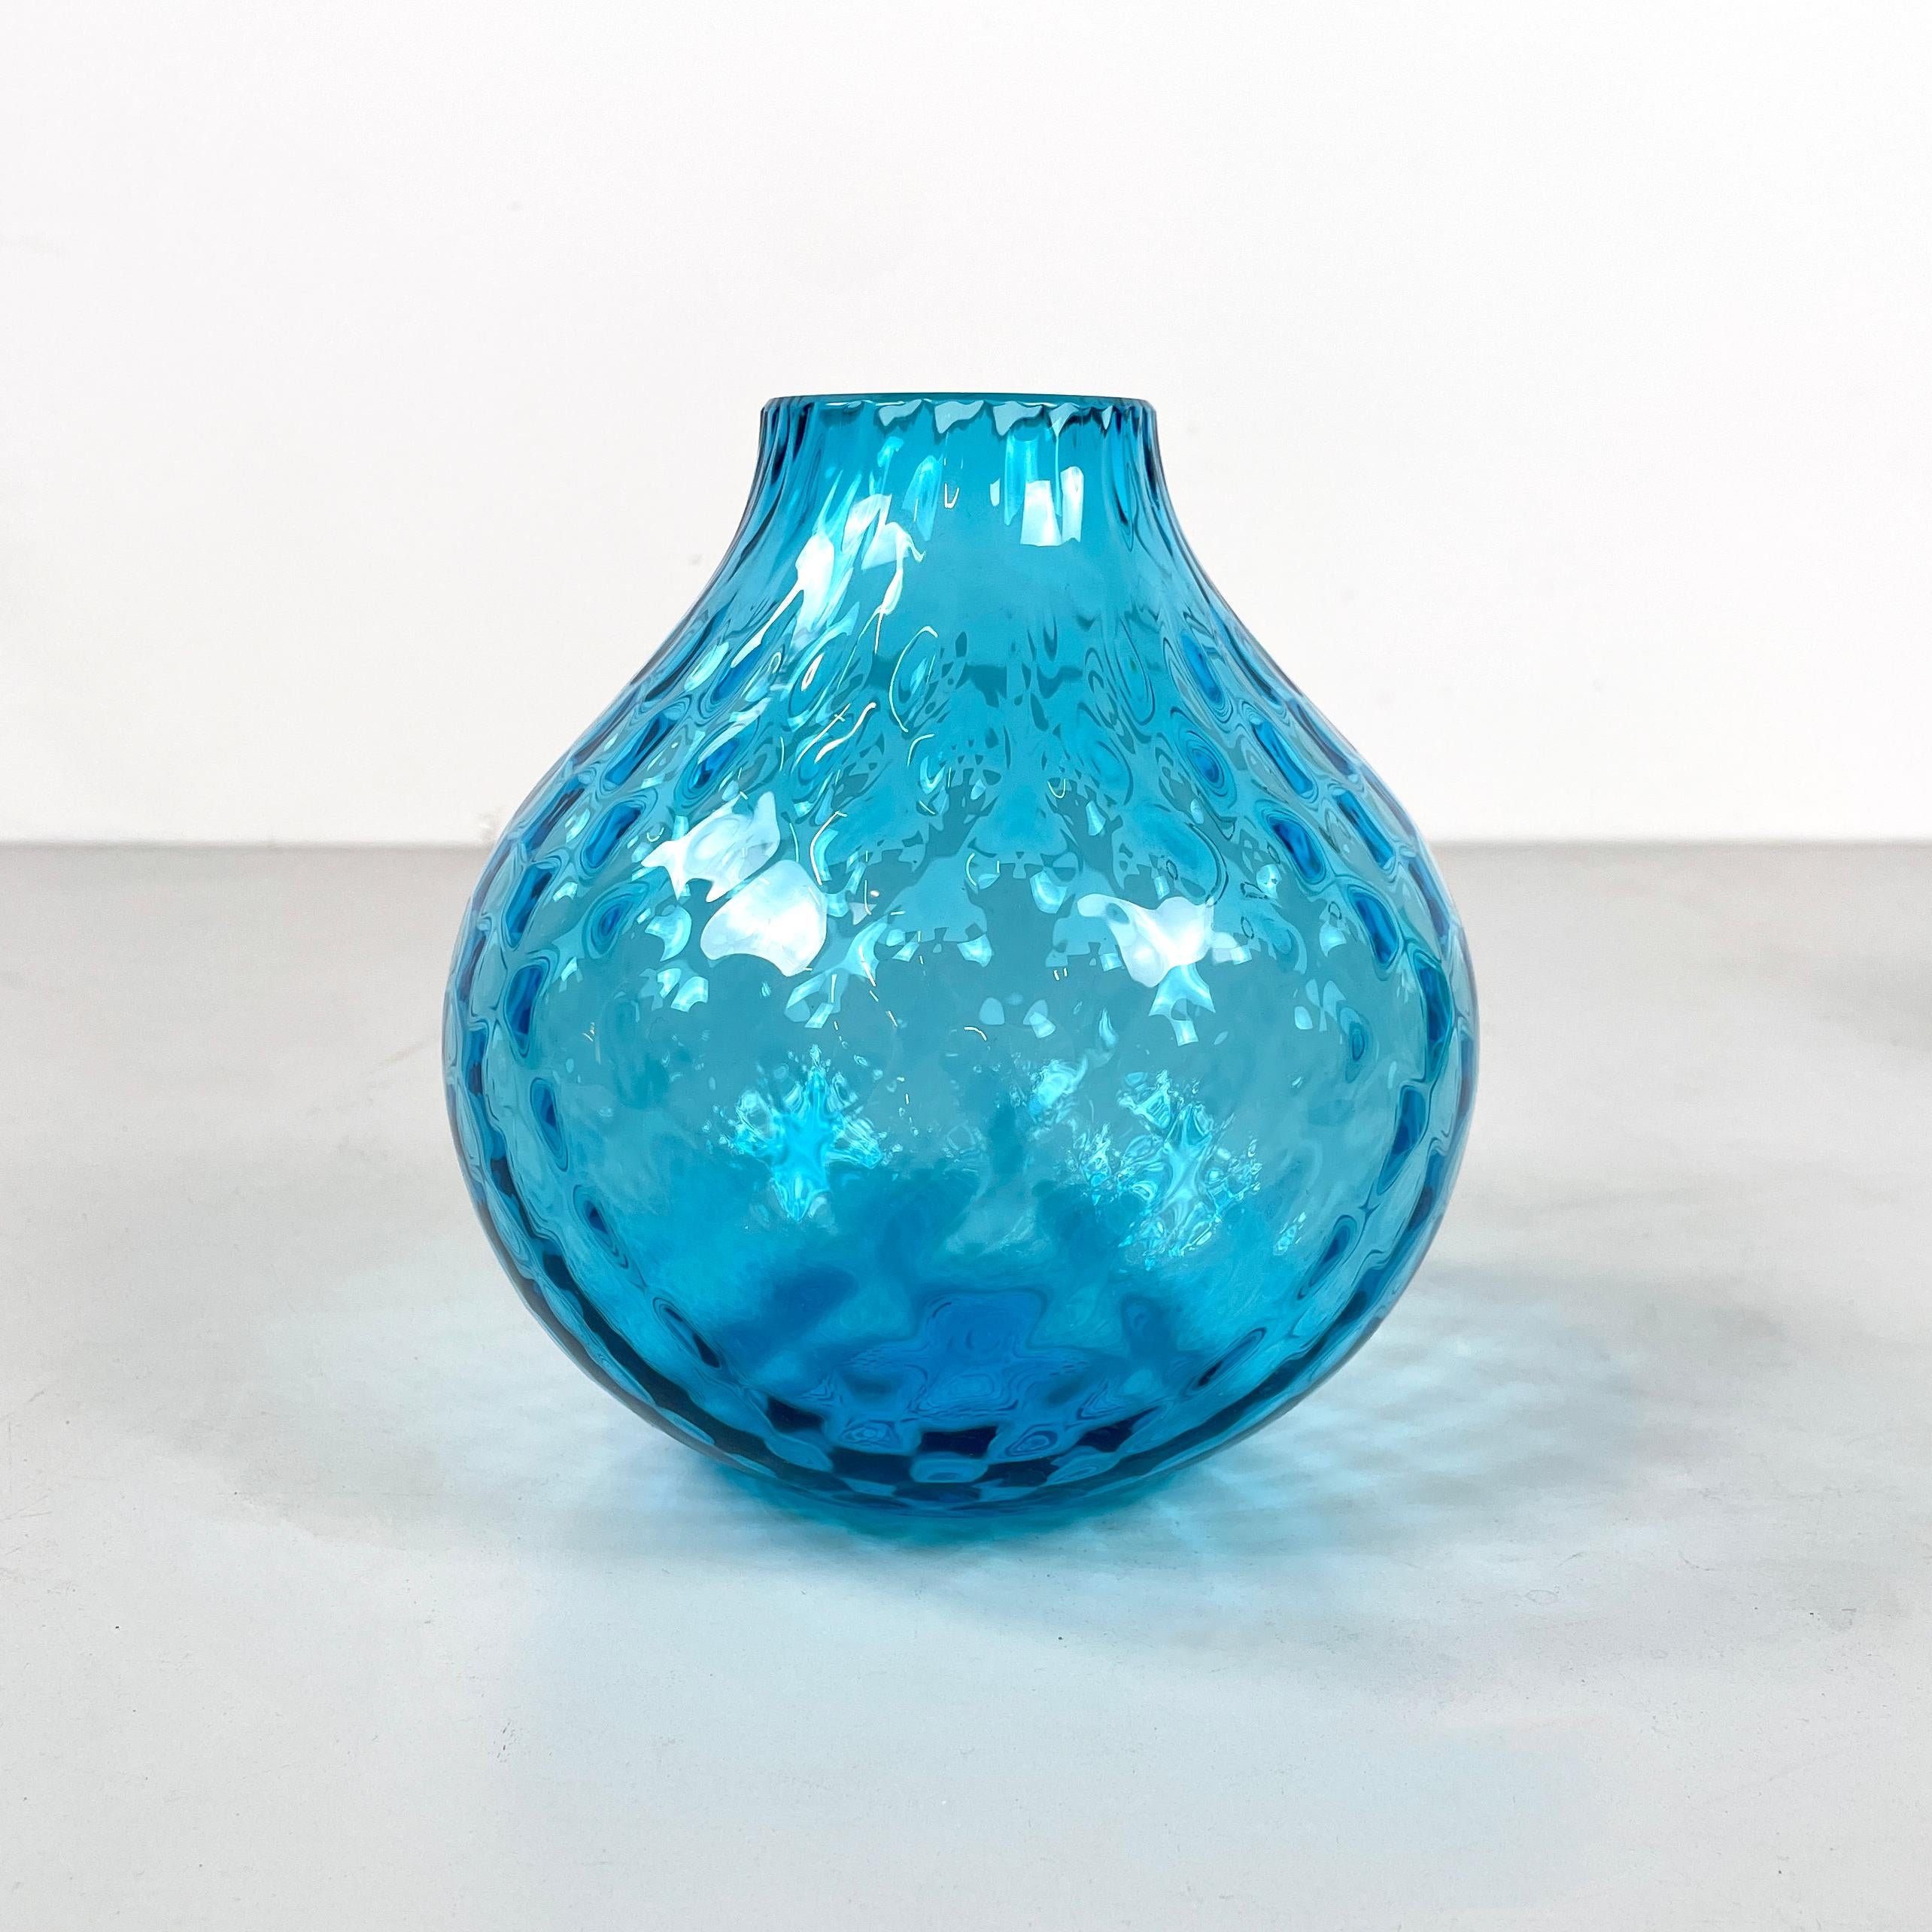 Italienische Moderne Runde Vase aus hellblauem Muranoglas von Venini 1990er Jahre
Fantastische runde Vase aus strukturiertem hellblauem Muranoglas im Vintage-Stil. Im oberen Teil hat er ein rundes Loch. Er wird in der Mitte breiter und verjüngt sich